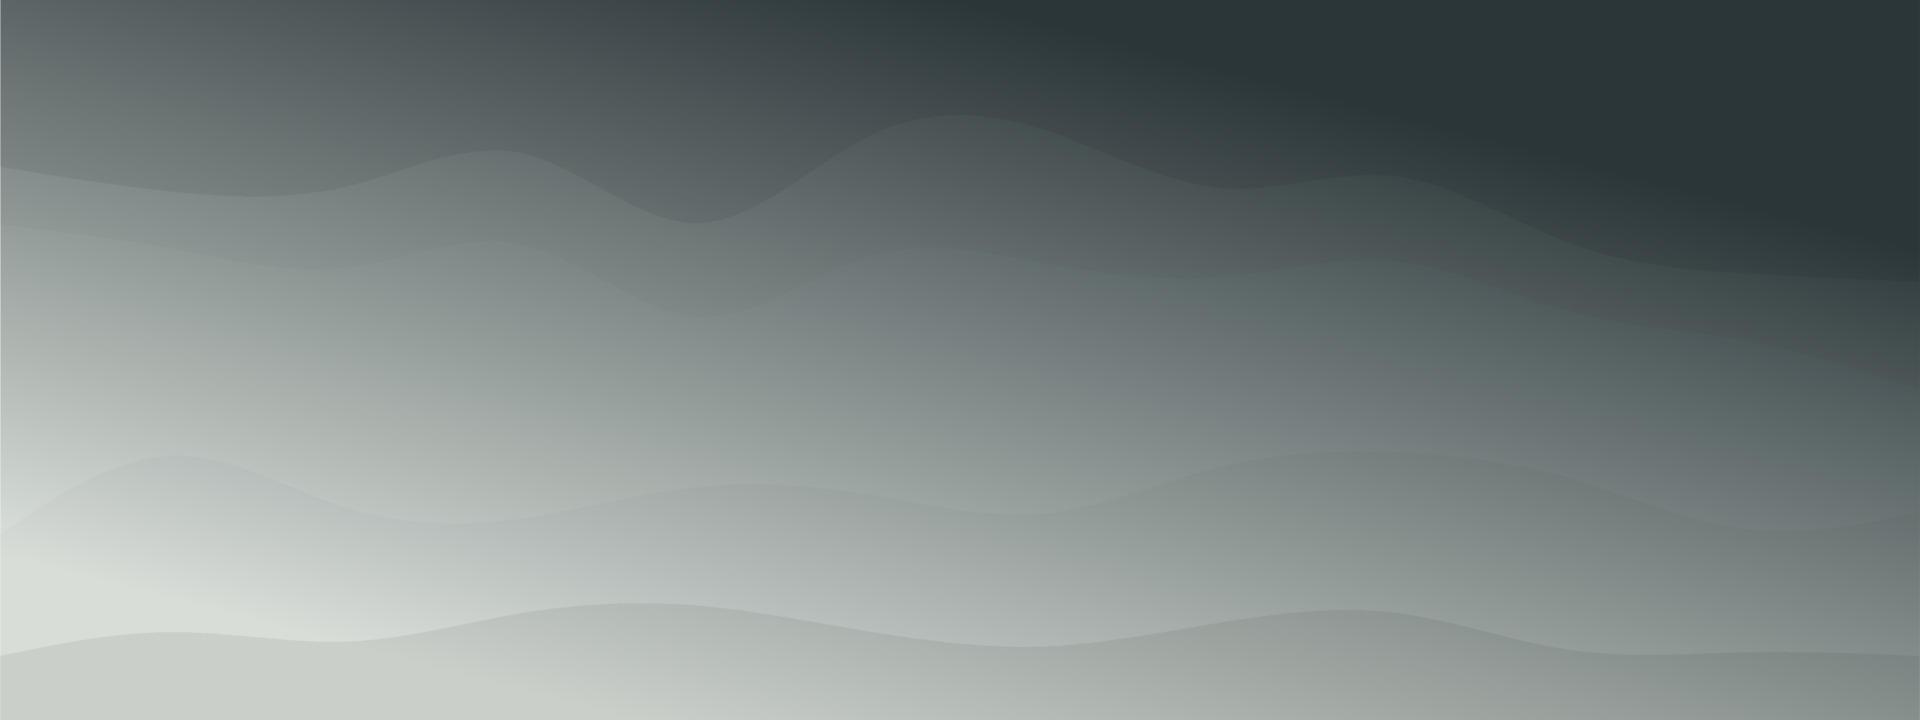 abstrakte Wellen flüssige Form Ebenen Hintergrund dunkle natürliche blasse Farben Farbverlauf. trendige Vorlage für Broschüren-Visitenkarten-Landingpage-Website. Vektorillustration eps10 vektor